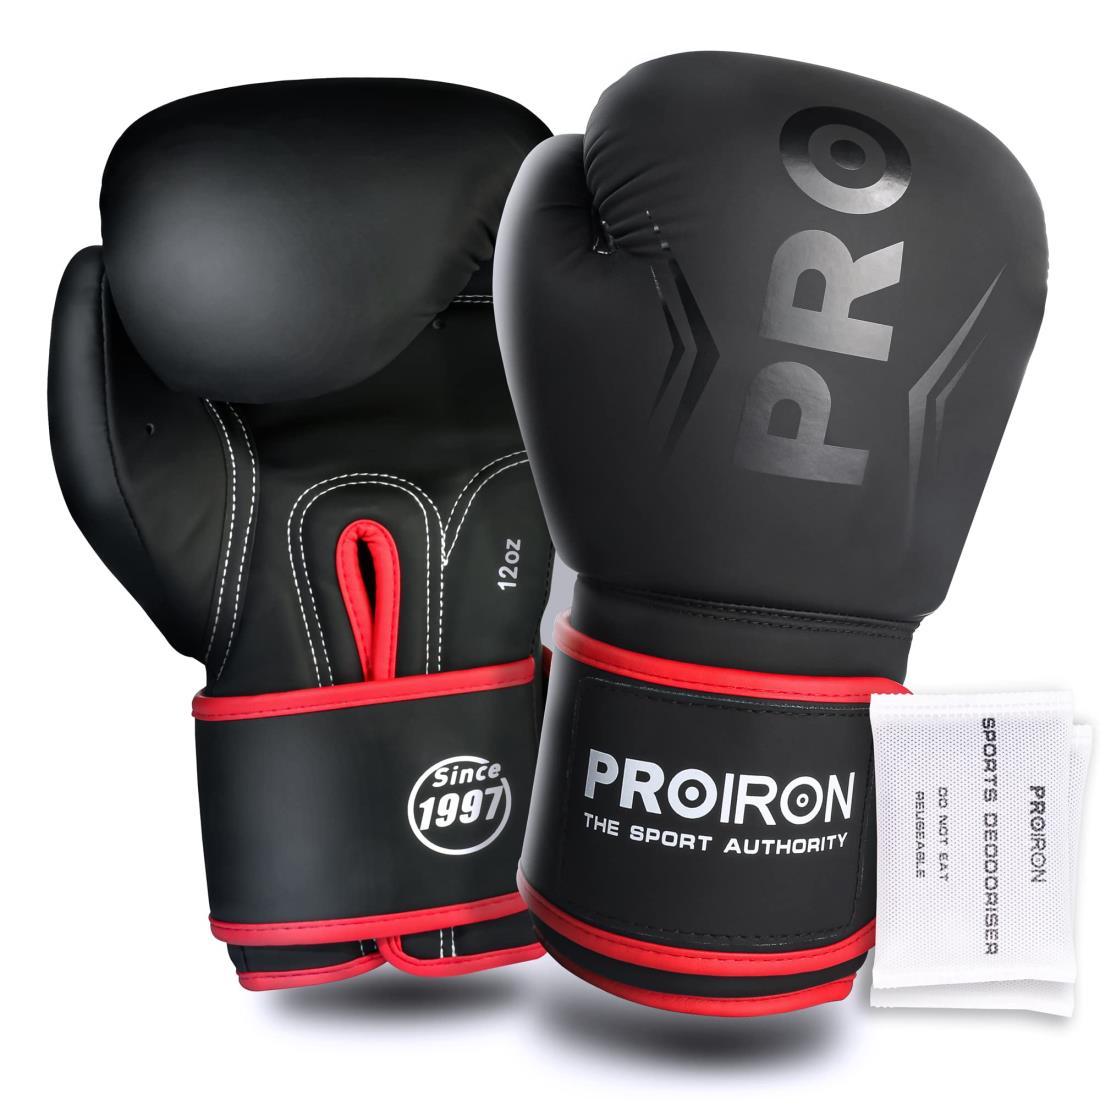 PROIRON ボクシンググローブ 12oz ボクシング用グローブ パンチンググローブ 厚く 耐久性があり 快適 boxing gloves メンテナンスバッグ付き 1年間の